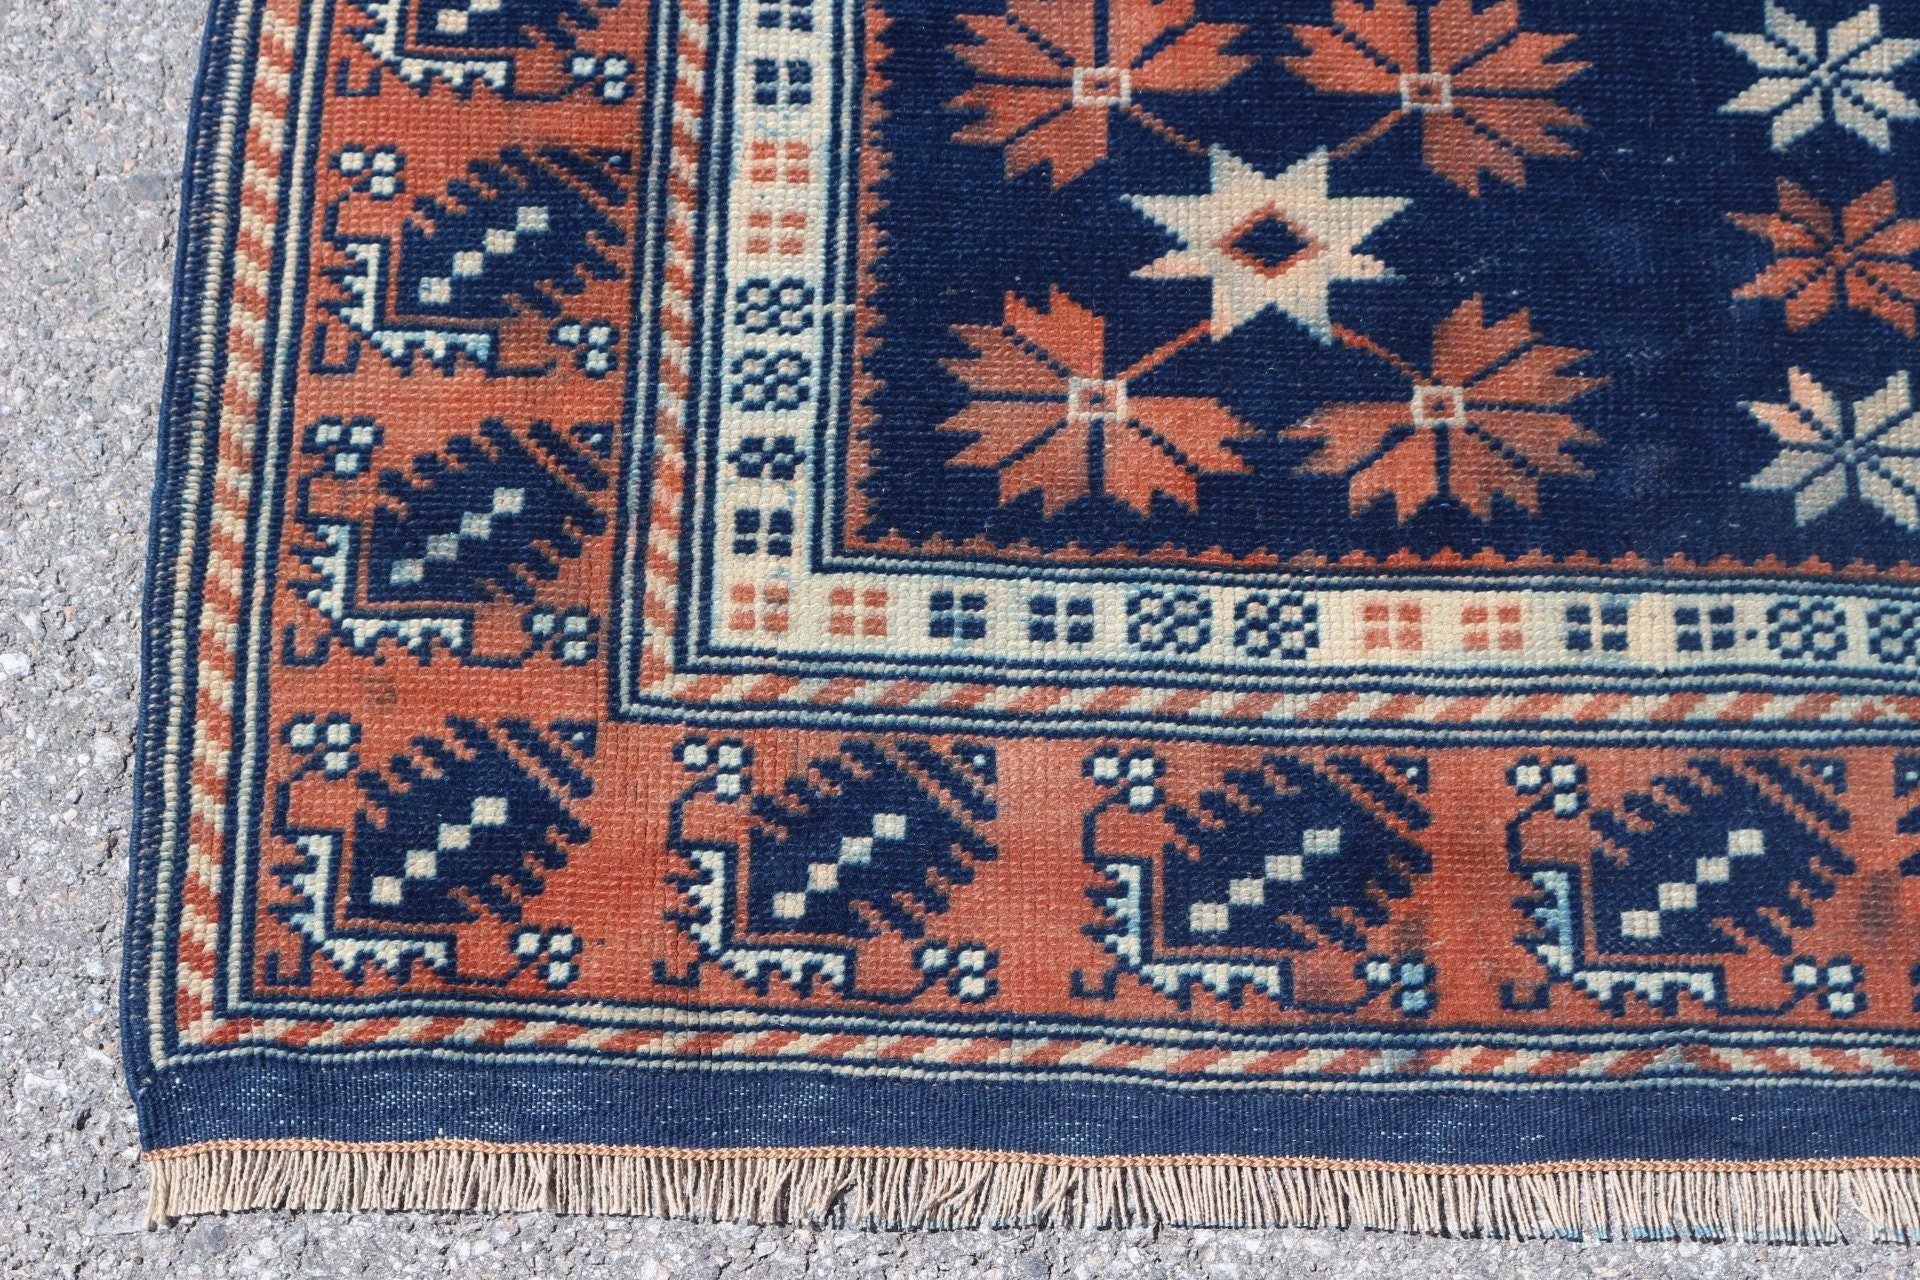 Turkish Rugs, Rugs for Stair, Kitchen Rug, Aesthetic Rug, Blue  3.9x16 ft Runner Rug, Corridor Rugs, Vintage Rug, Oriental Rug